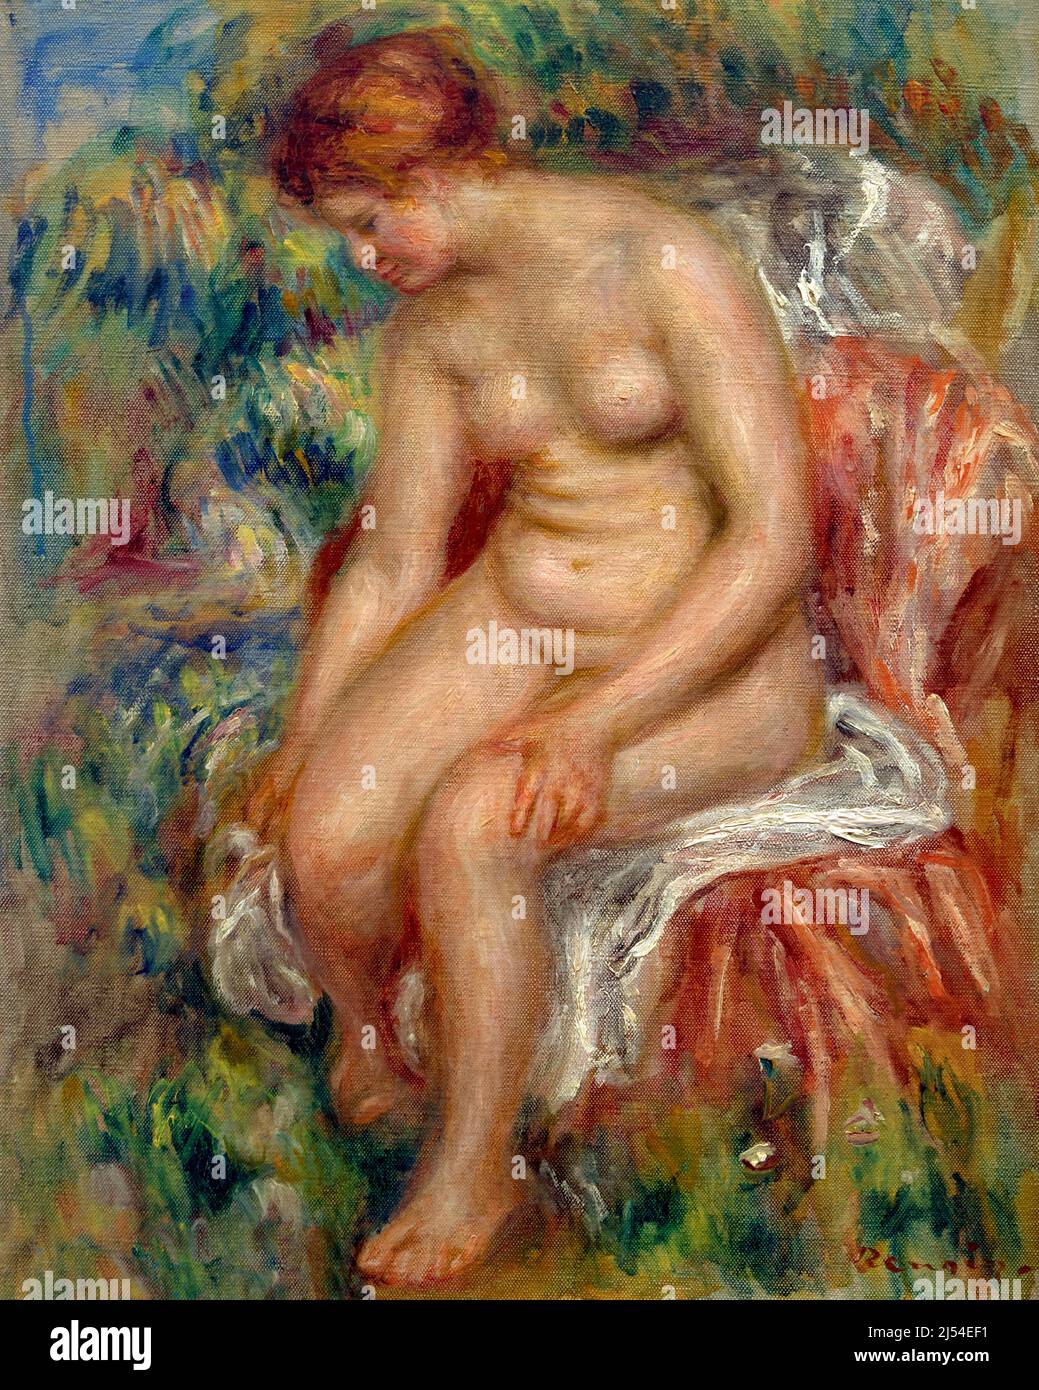 Bagno seduto asciugare la gamba, Baigneuse assise s'essuyant une jambe, Pierre-Auguste Renoir, circa 1914, Musee de l'Orangerie, Parigi, Francia, Europa Foto Stock